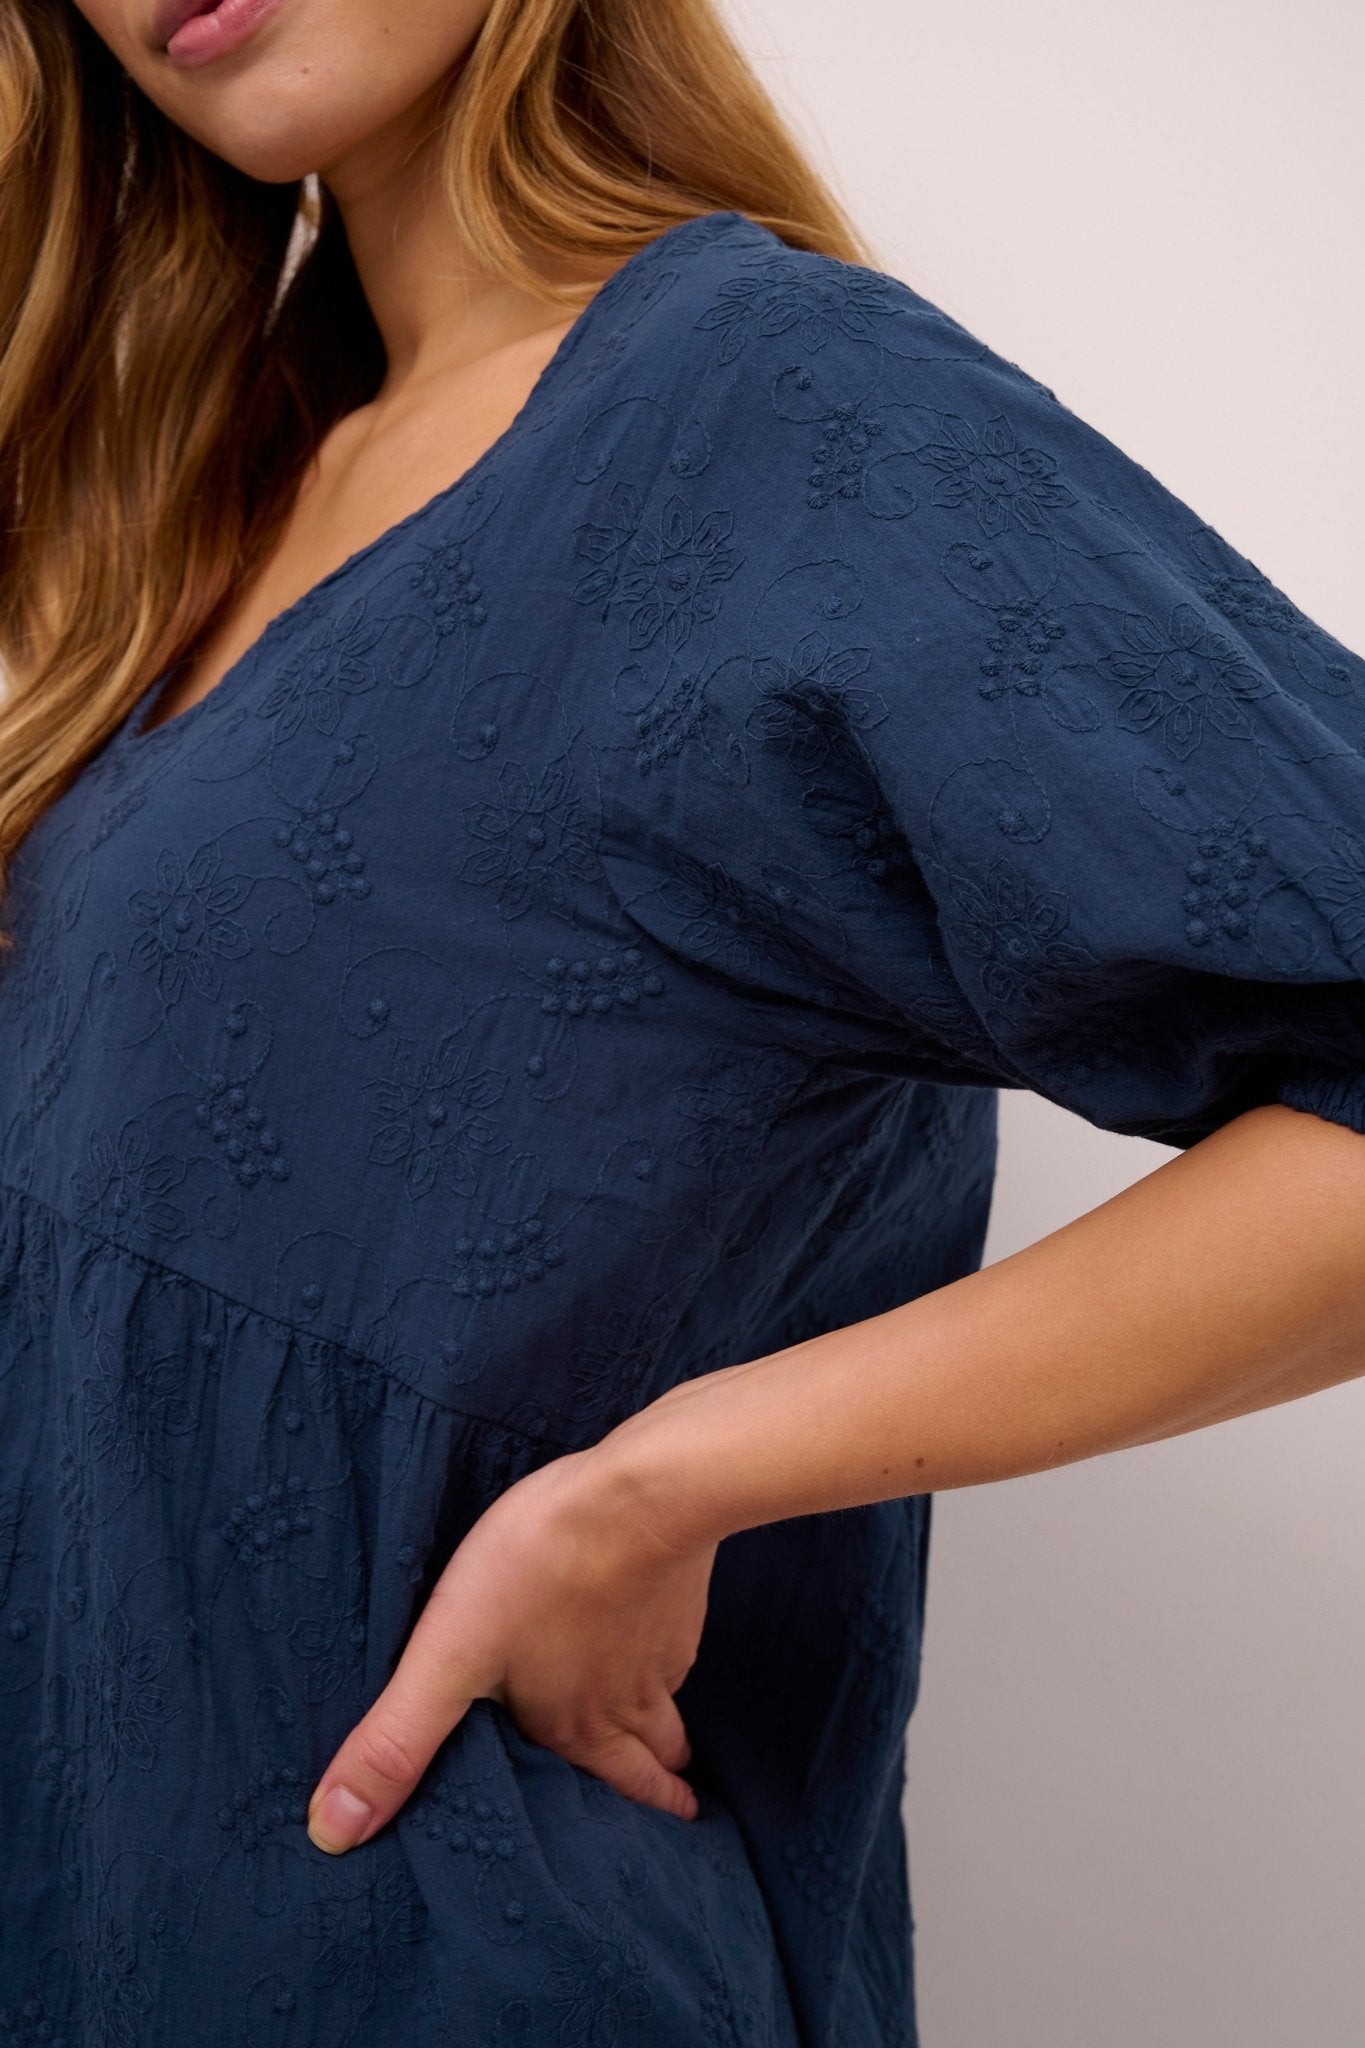 Eve blouse by Culture - dress blues - Blue Sky Fashions & Lingerie